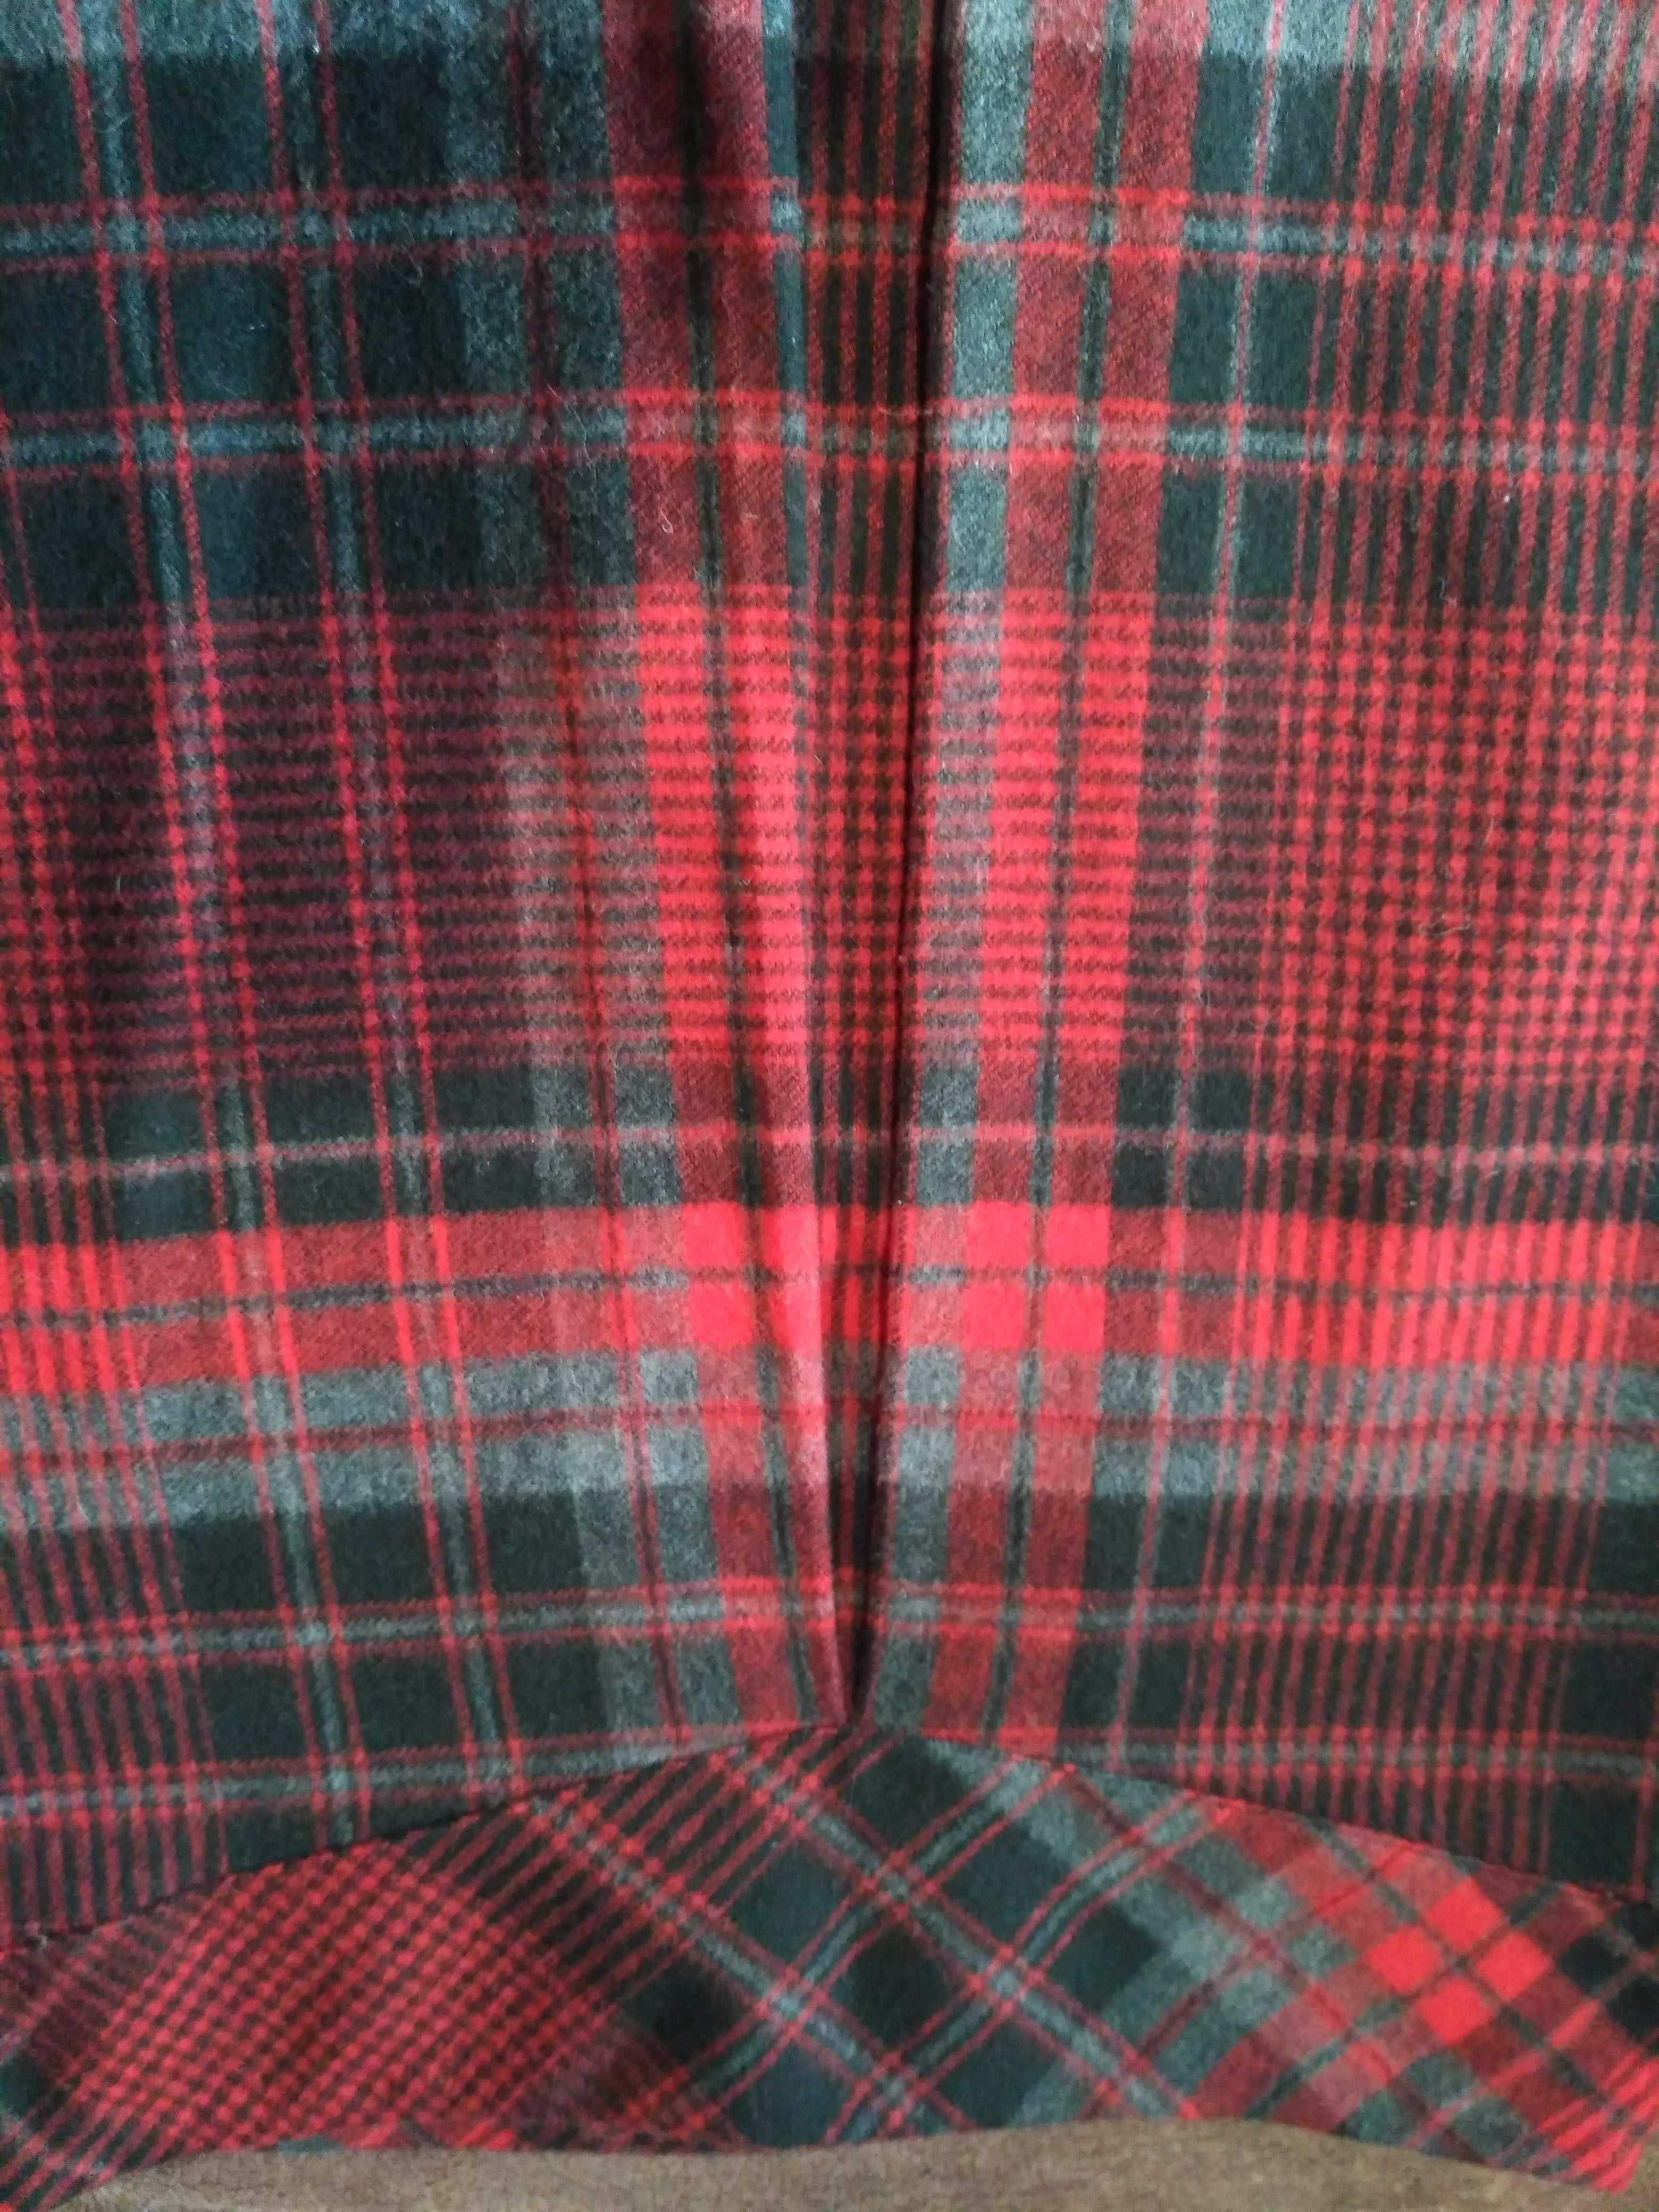 юбка Шотландская кильт в клетку шерсть красная клетка женская юбка